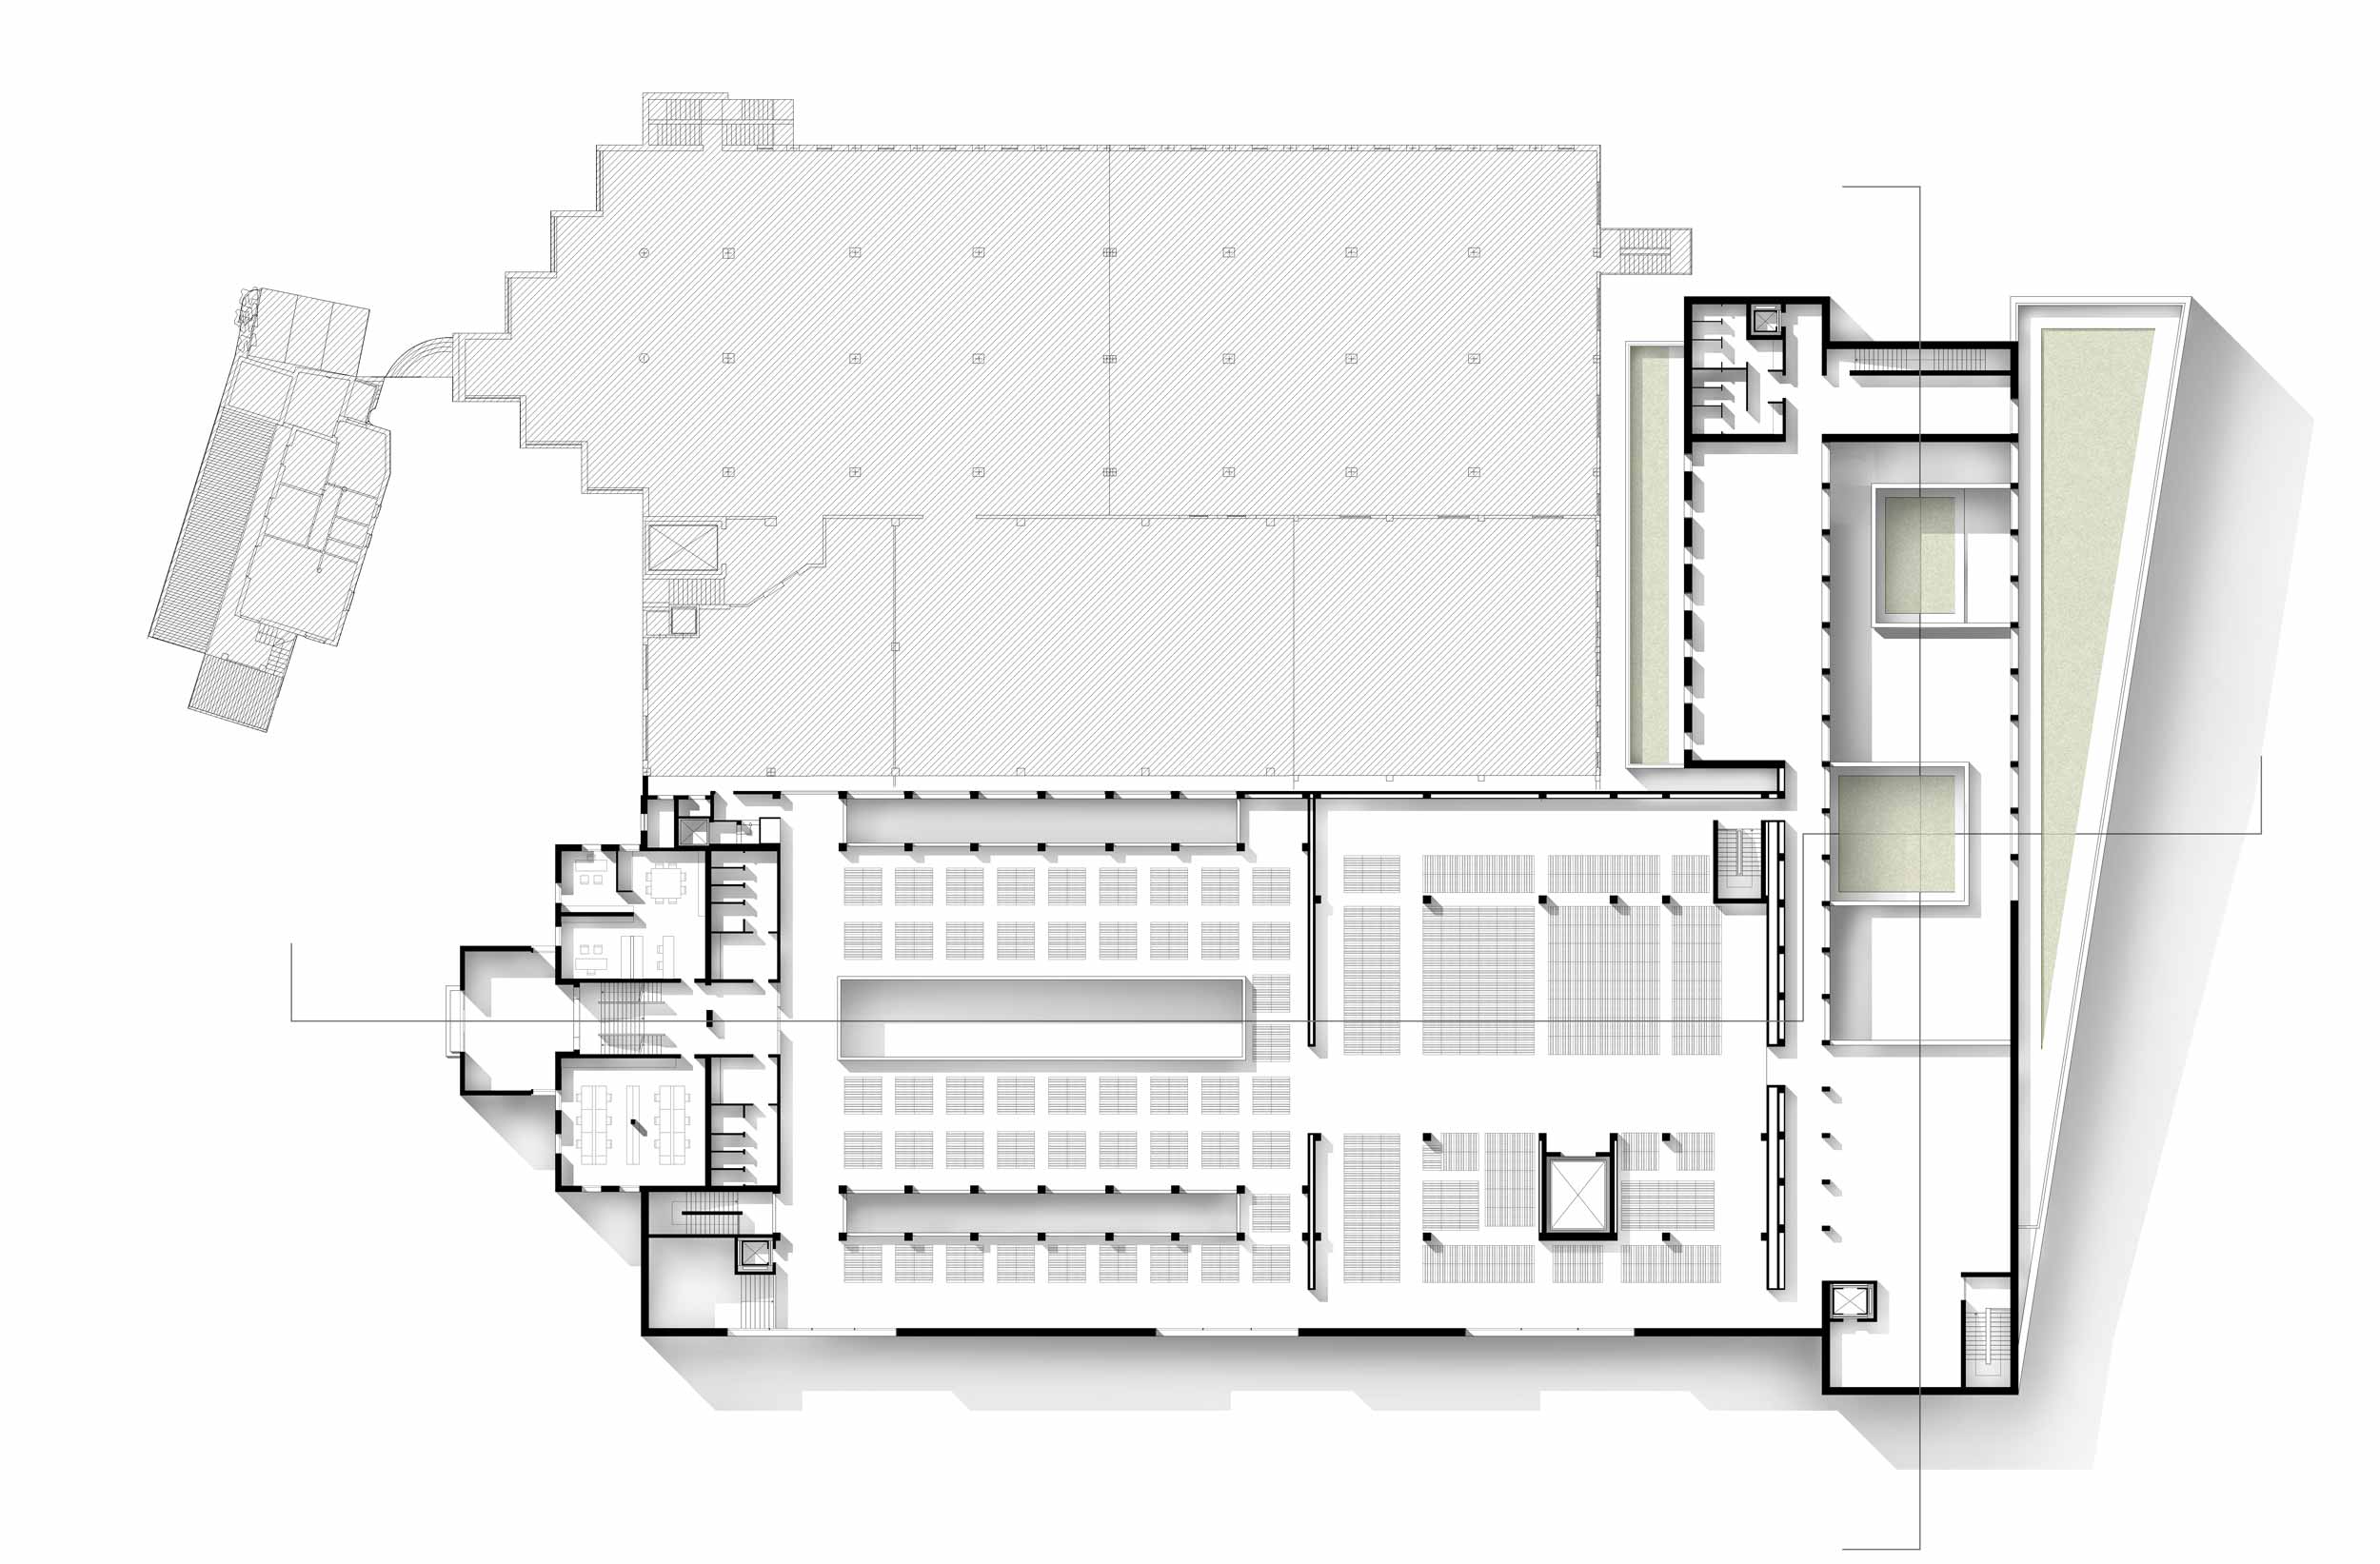 first-floor plan - Valpolicella winery